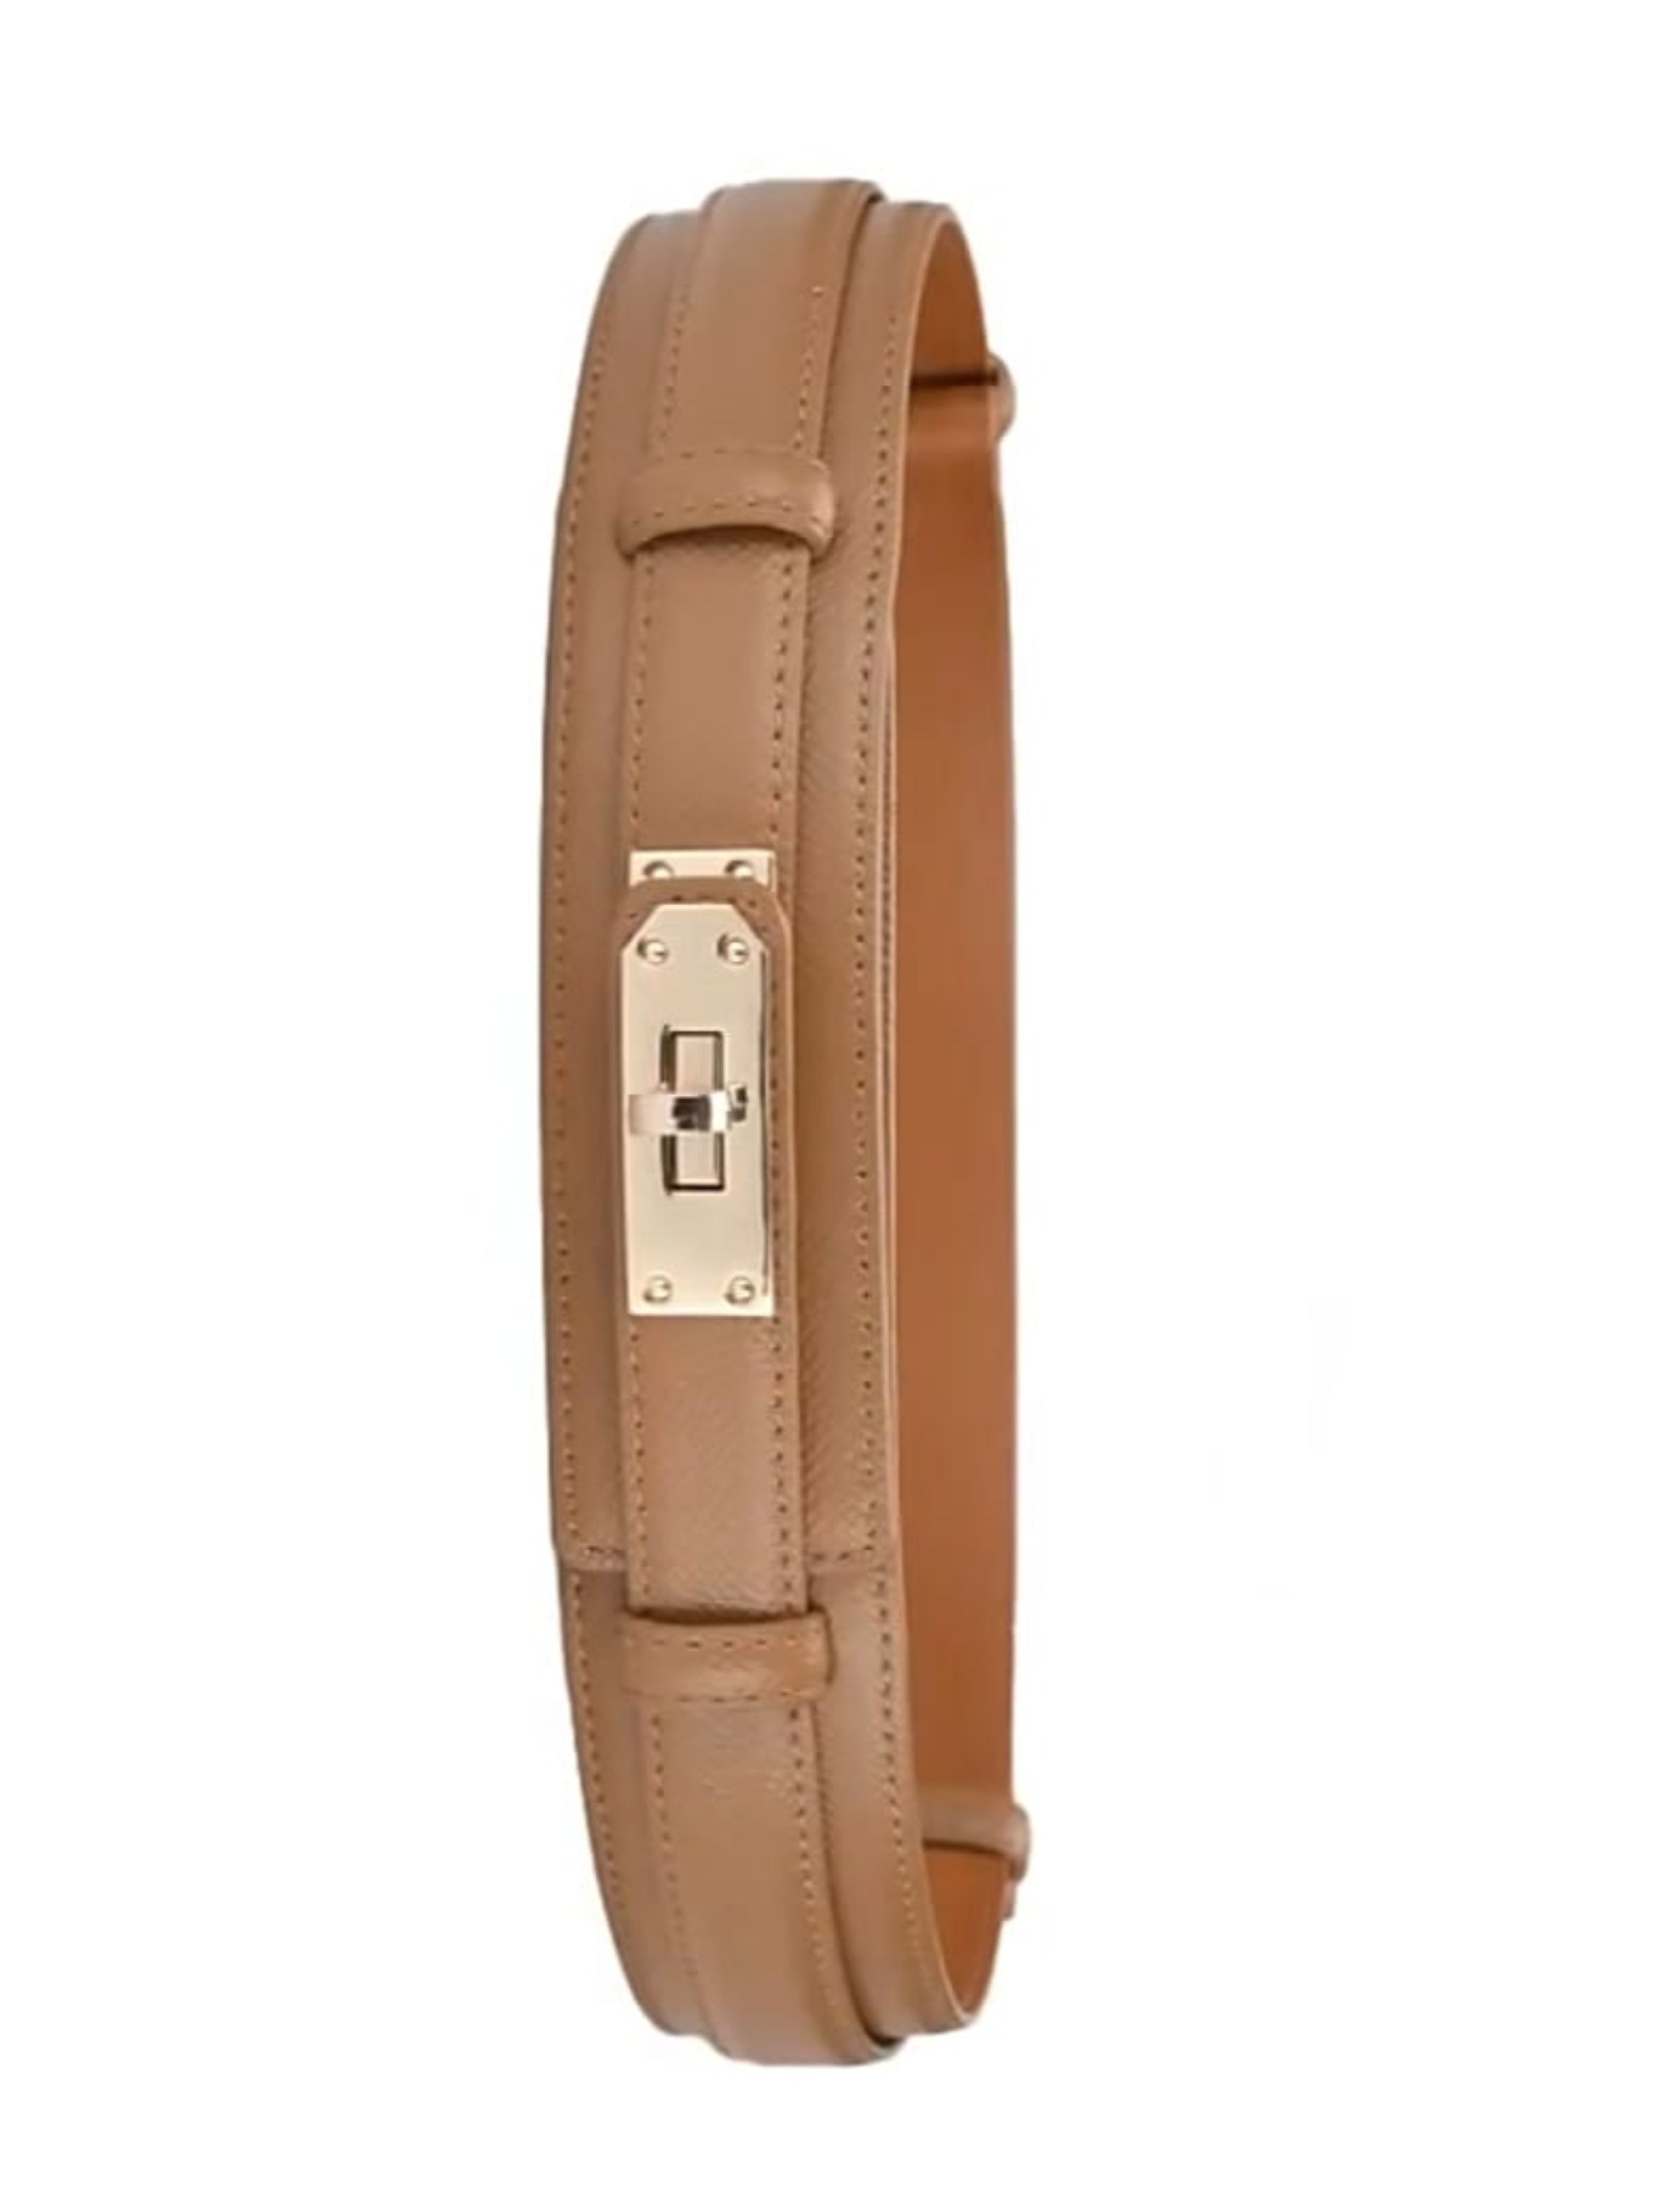 Twist-Lock Adjustable Faux Leather Wide Belt